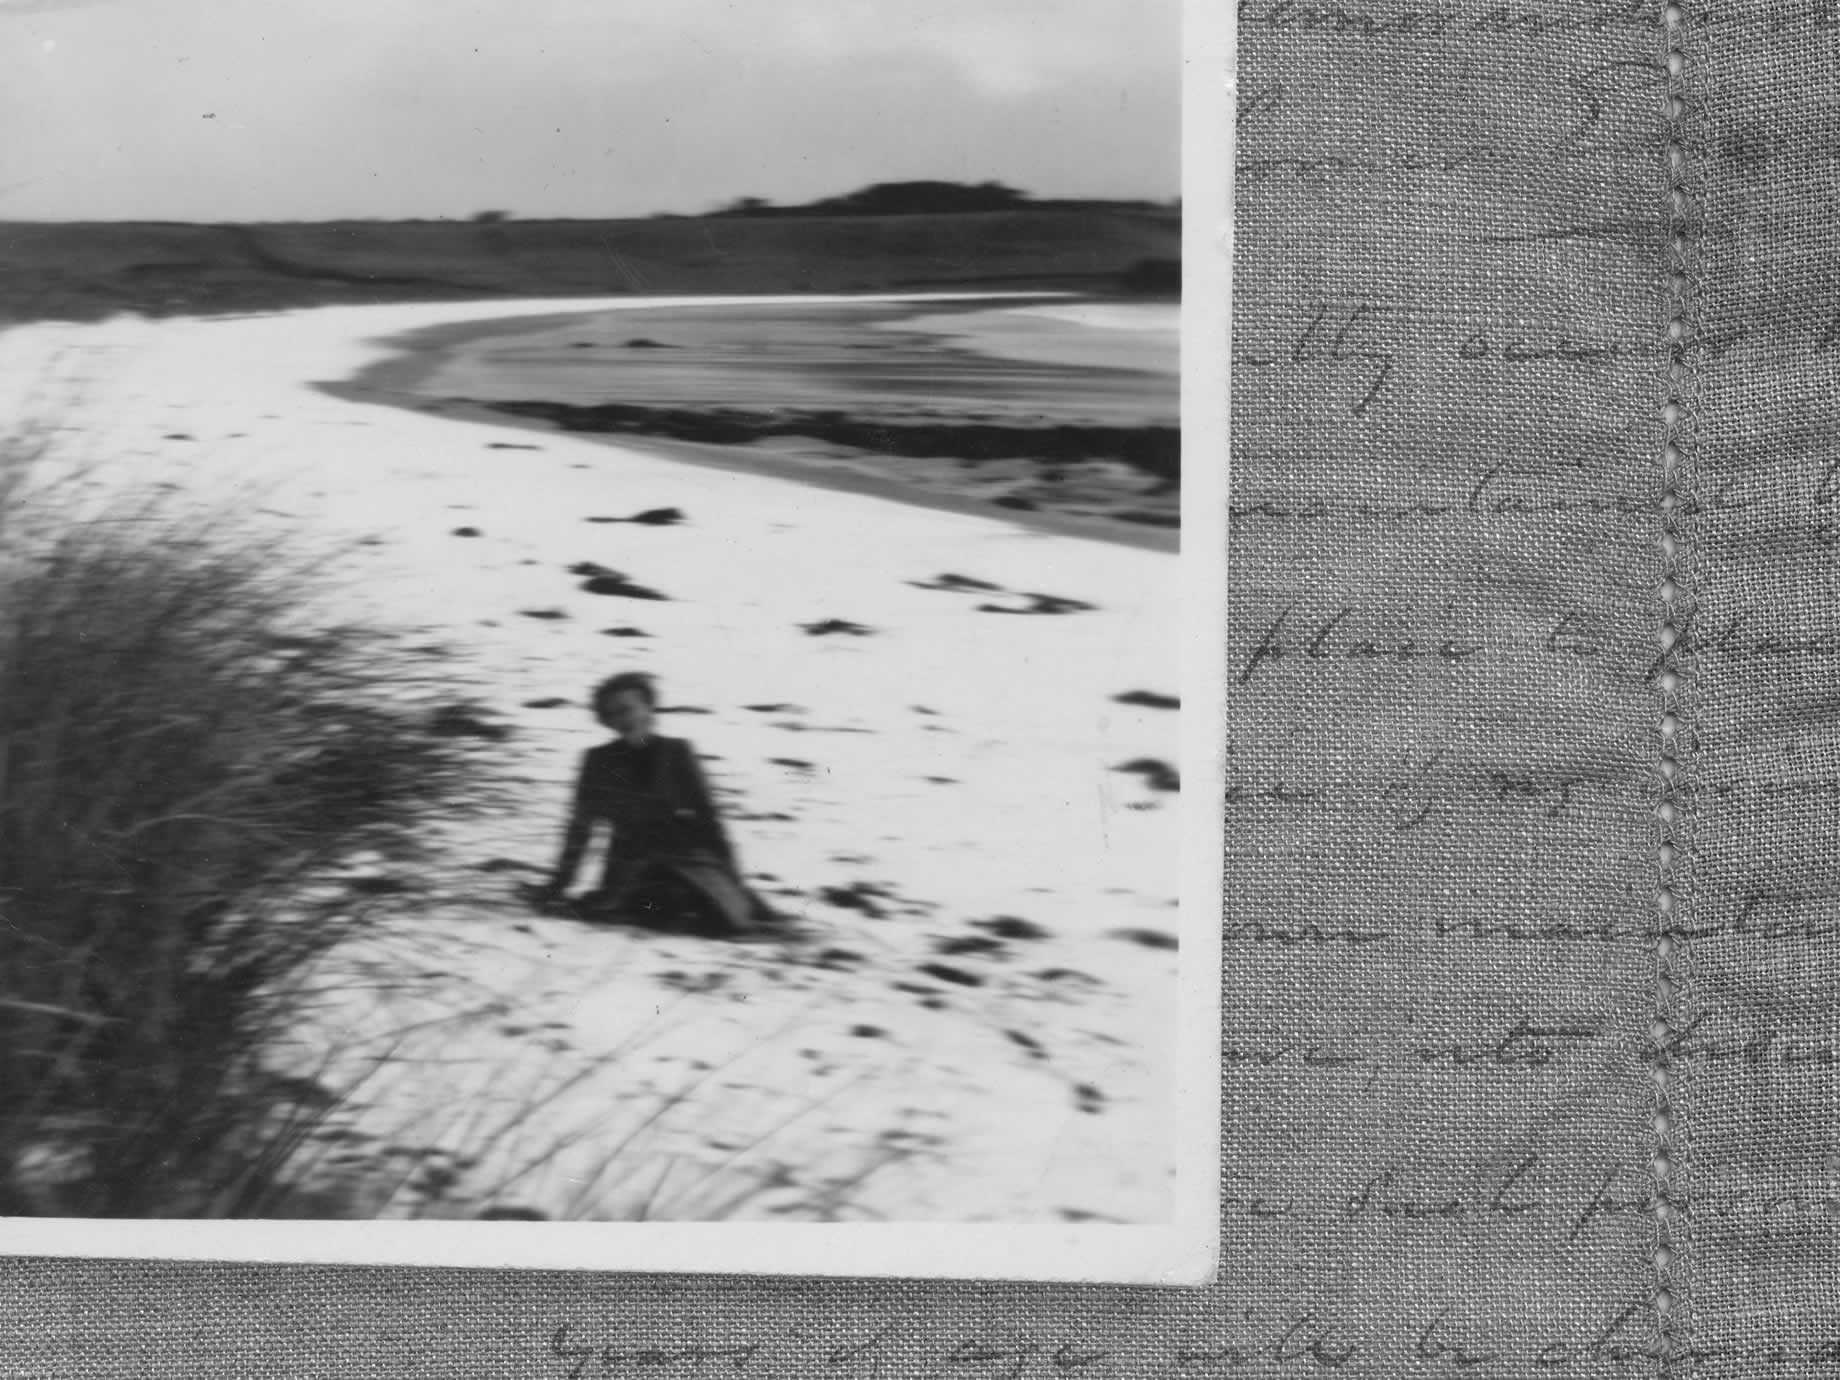 Un image rare de la neige sur la plage de Godfreys, avec Meg au premier plan, 1943